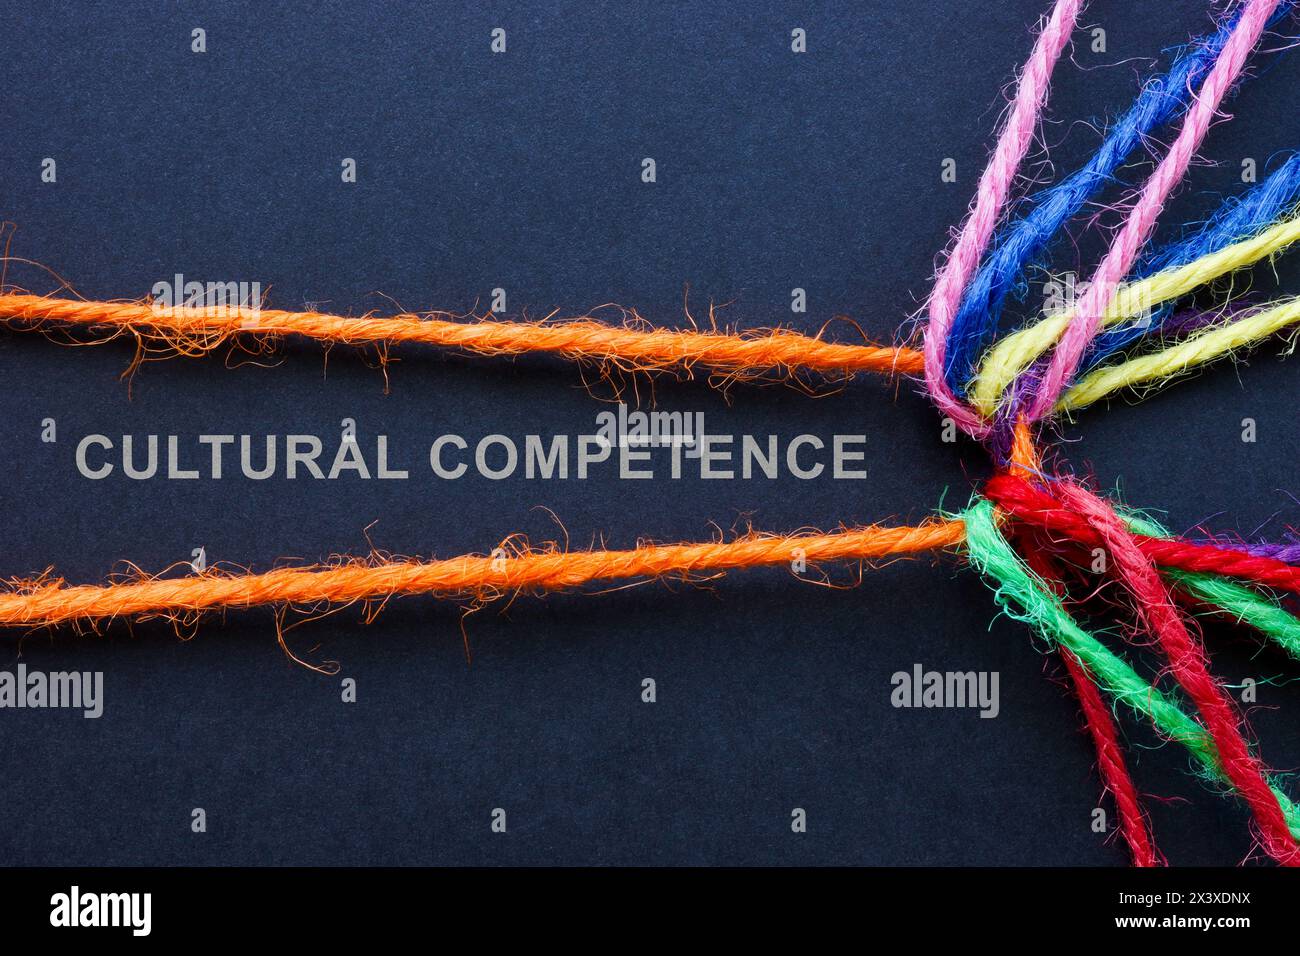 Inschrift kulturelle Kompetenz und ineinander verflochtene farbige Fäden. Stockfoto